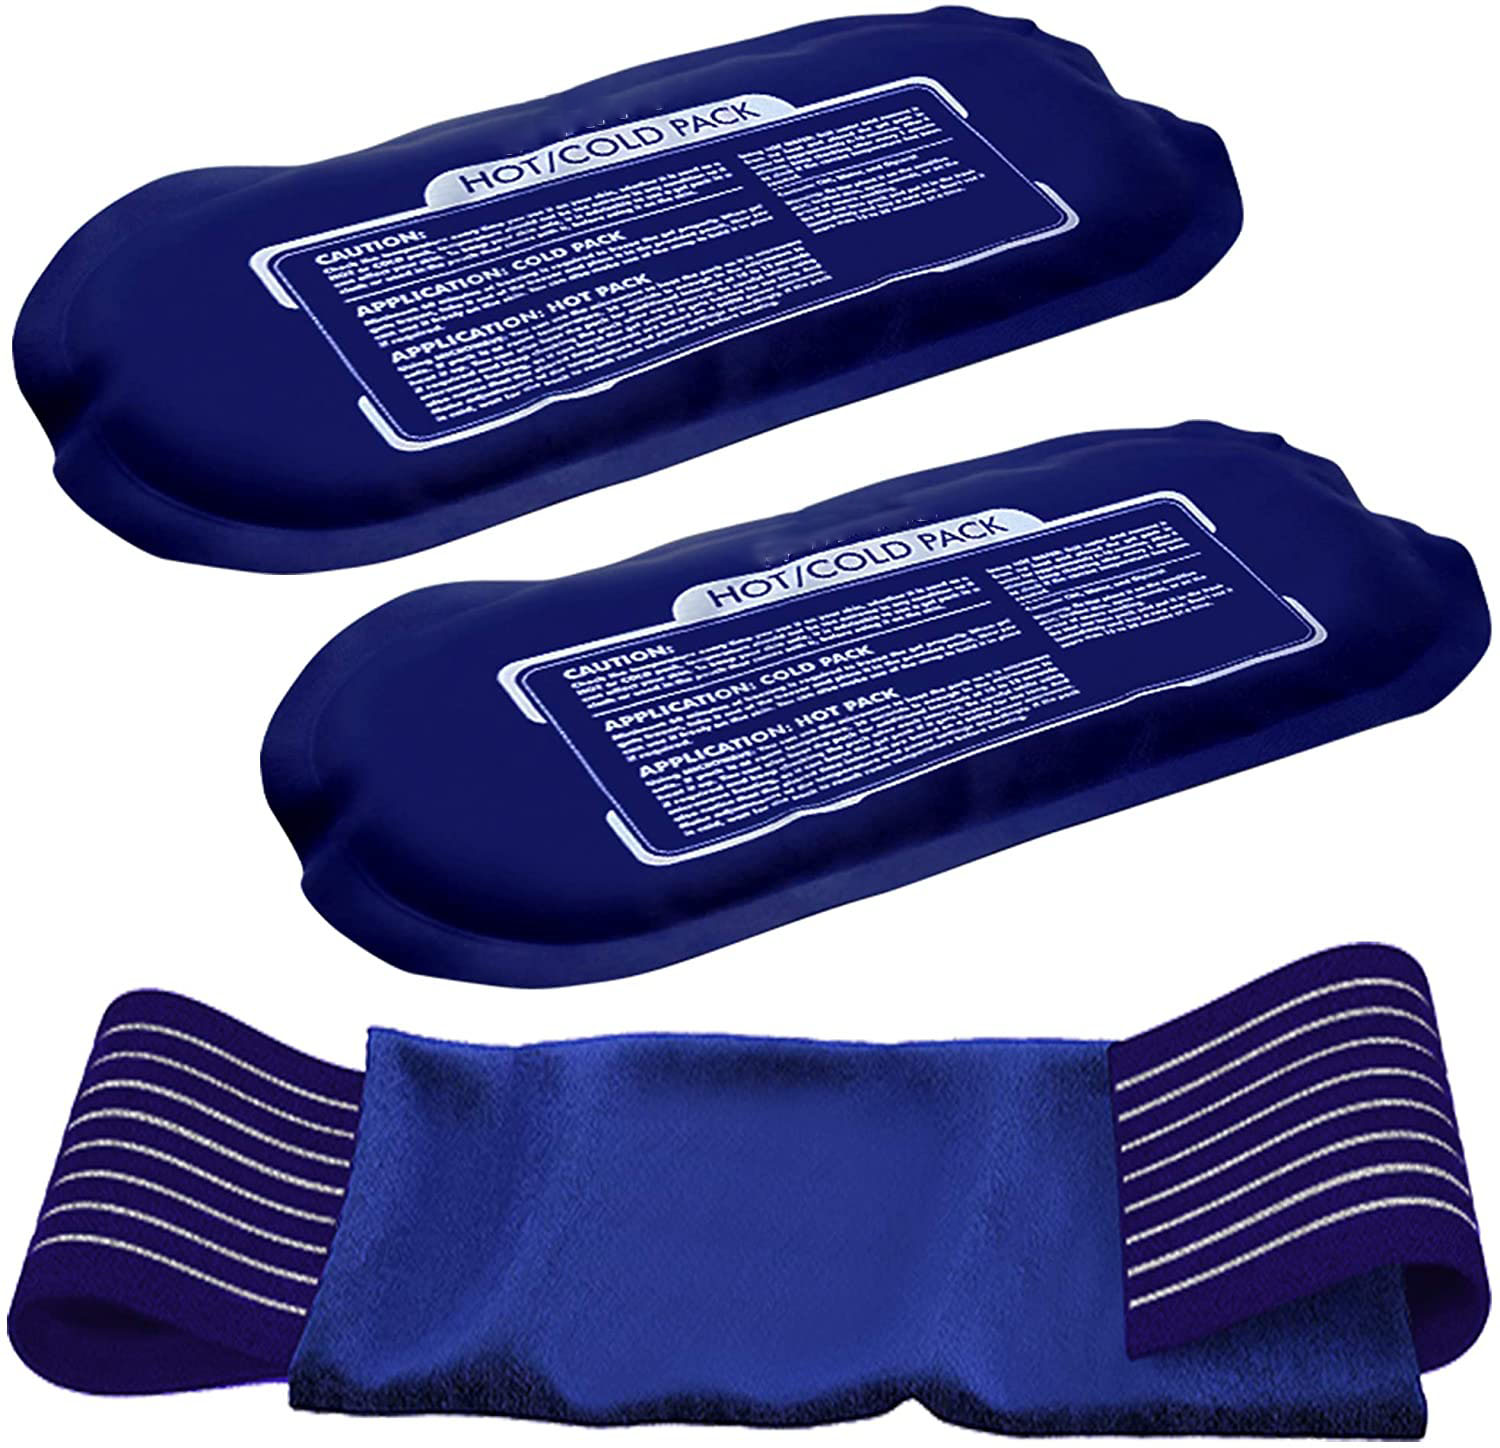 Pack chaud et froid en gel flexible réglable pour la récupération des blessures